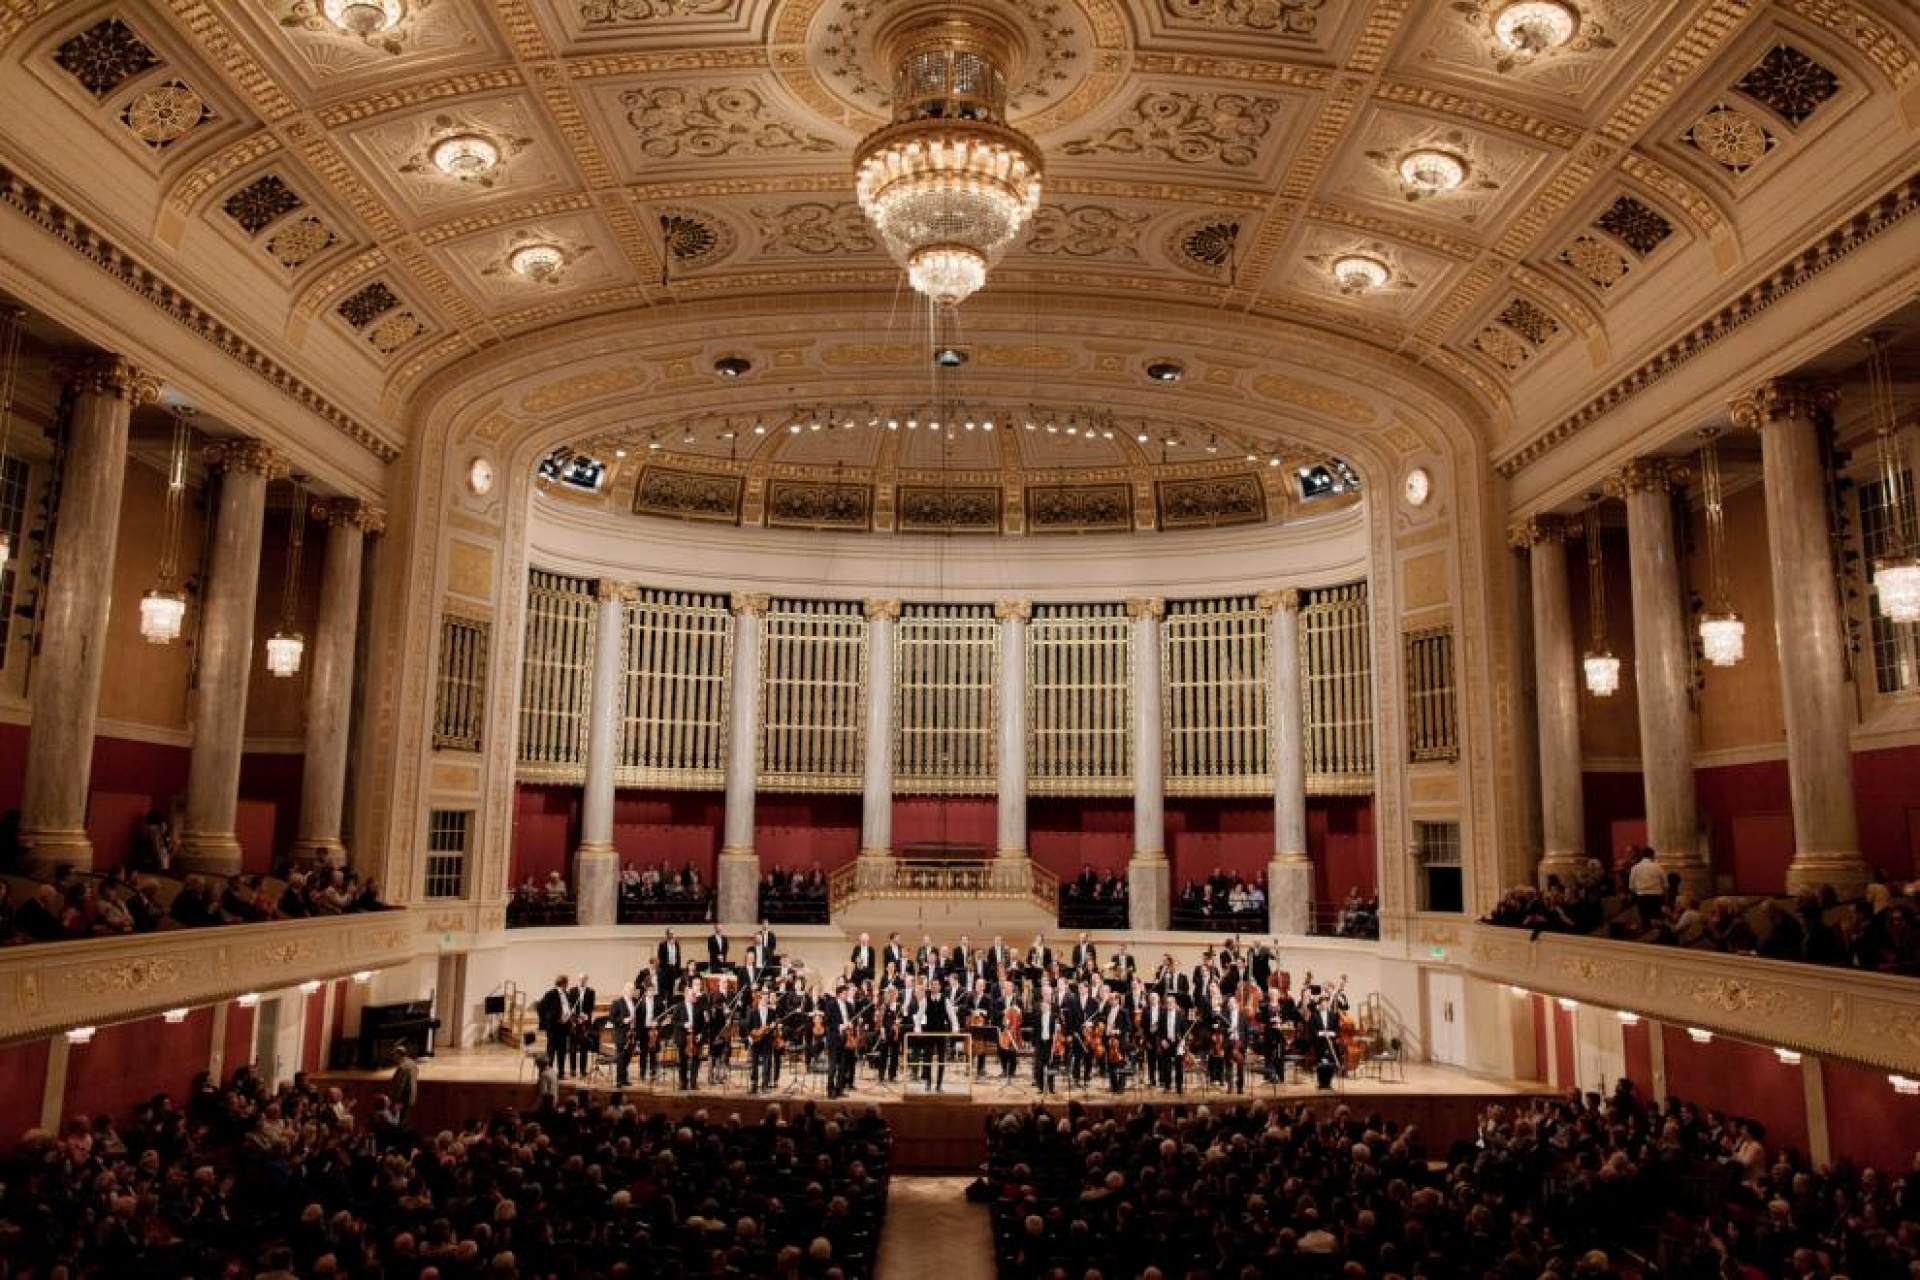 Orchestre de chambre de Vienne